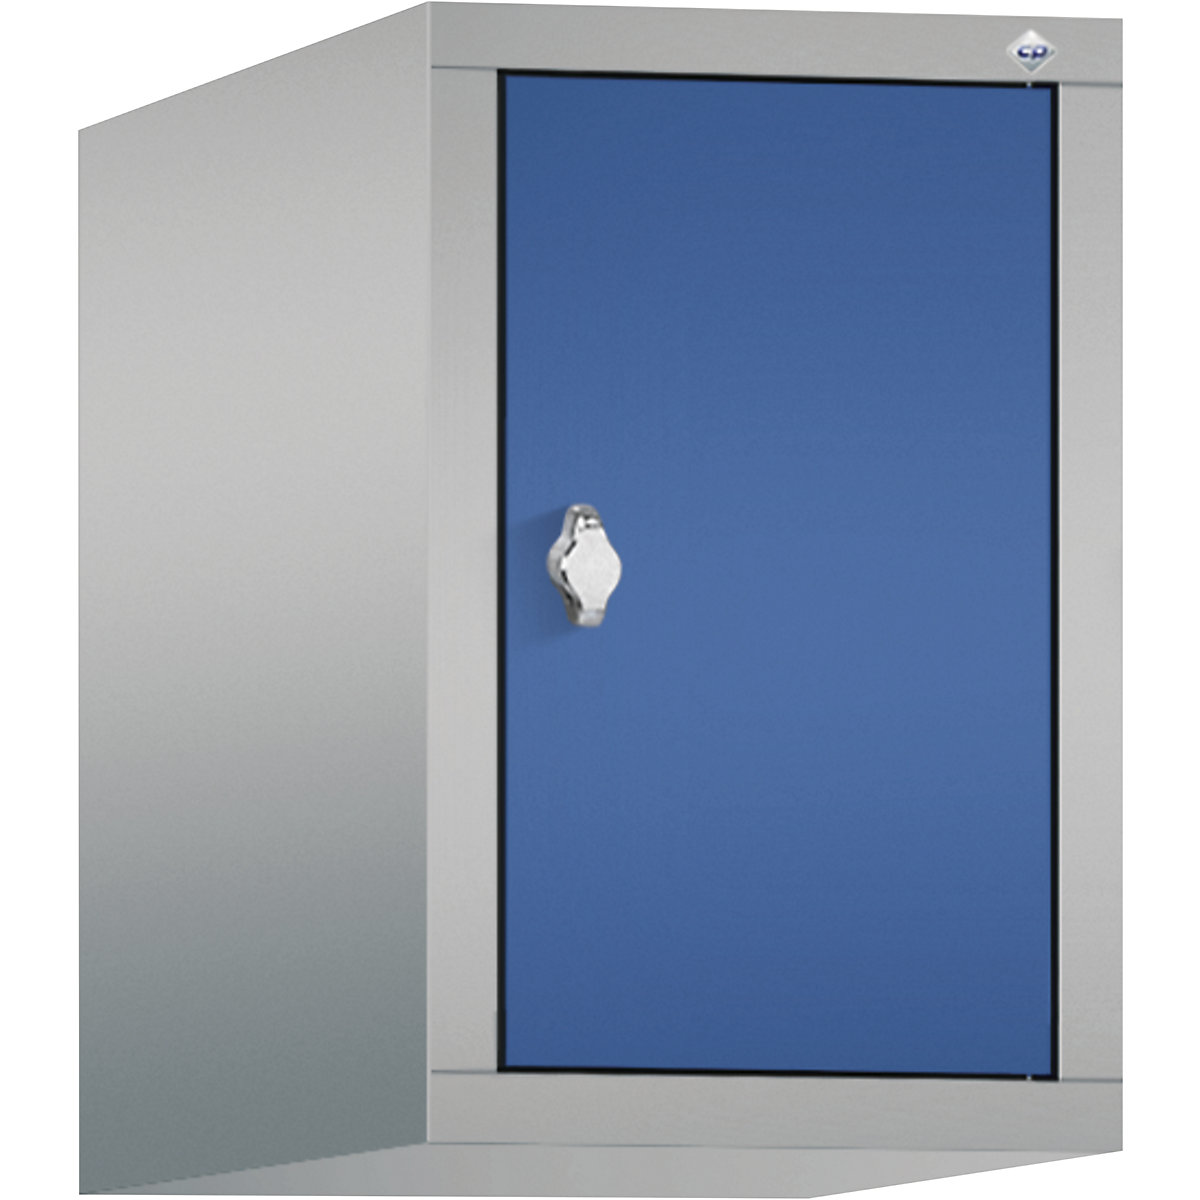 C+P – Altillo CLASSIC, 1 compartimento, anchura de compartimento 300 mm, aluminio blanco / azul genciana